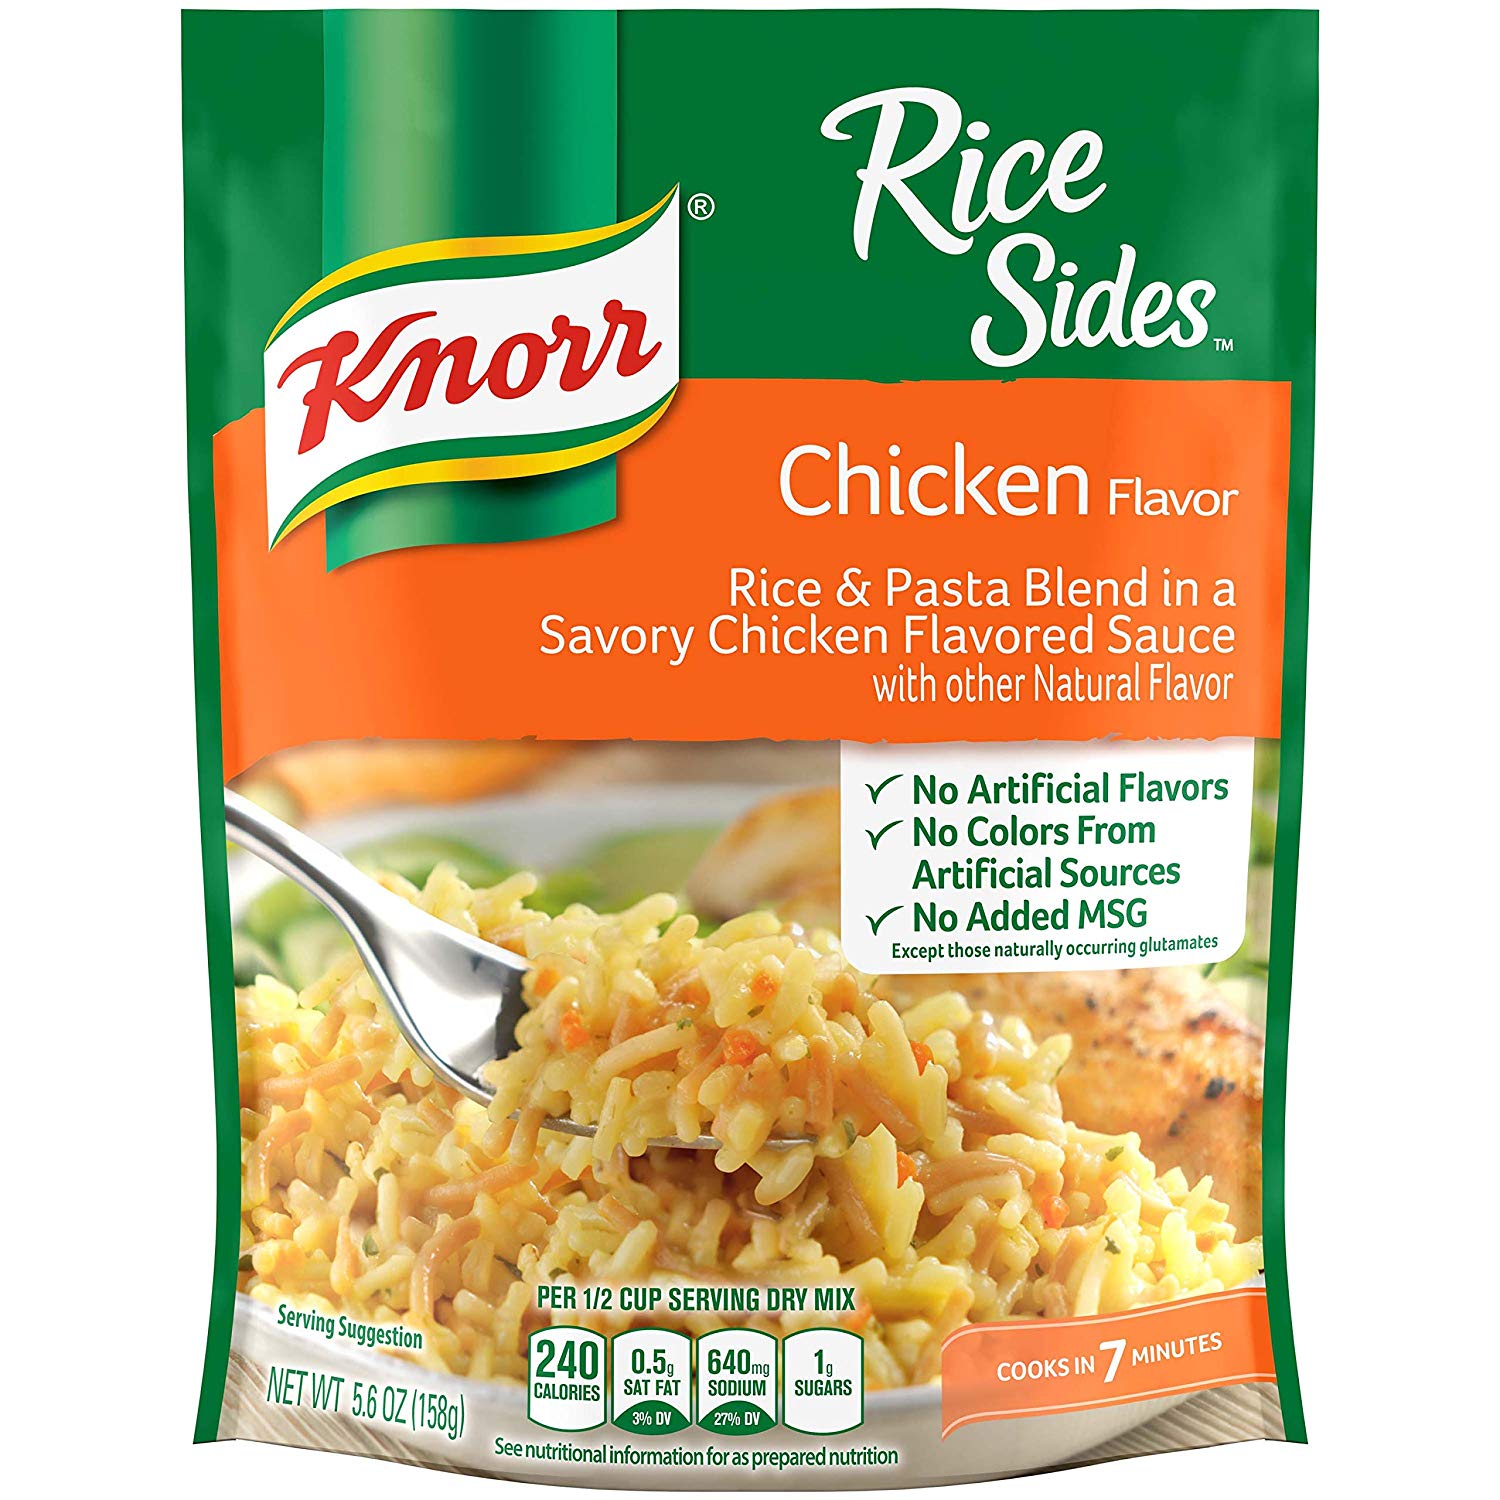 Knorr Rice Sides Chicken Flavor 5.6oz